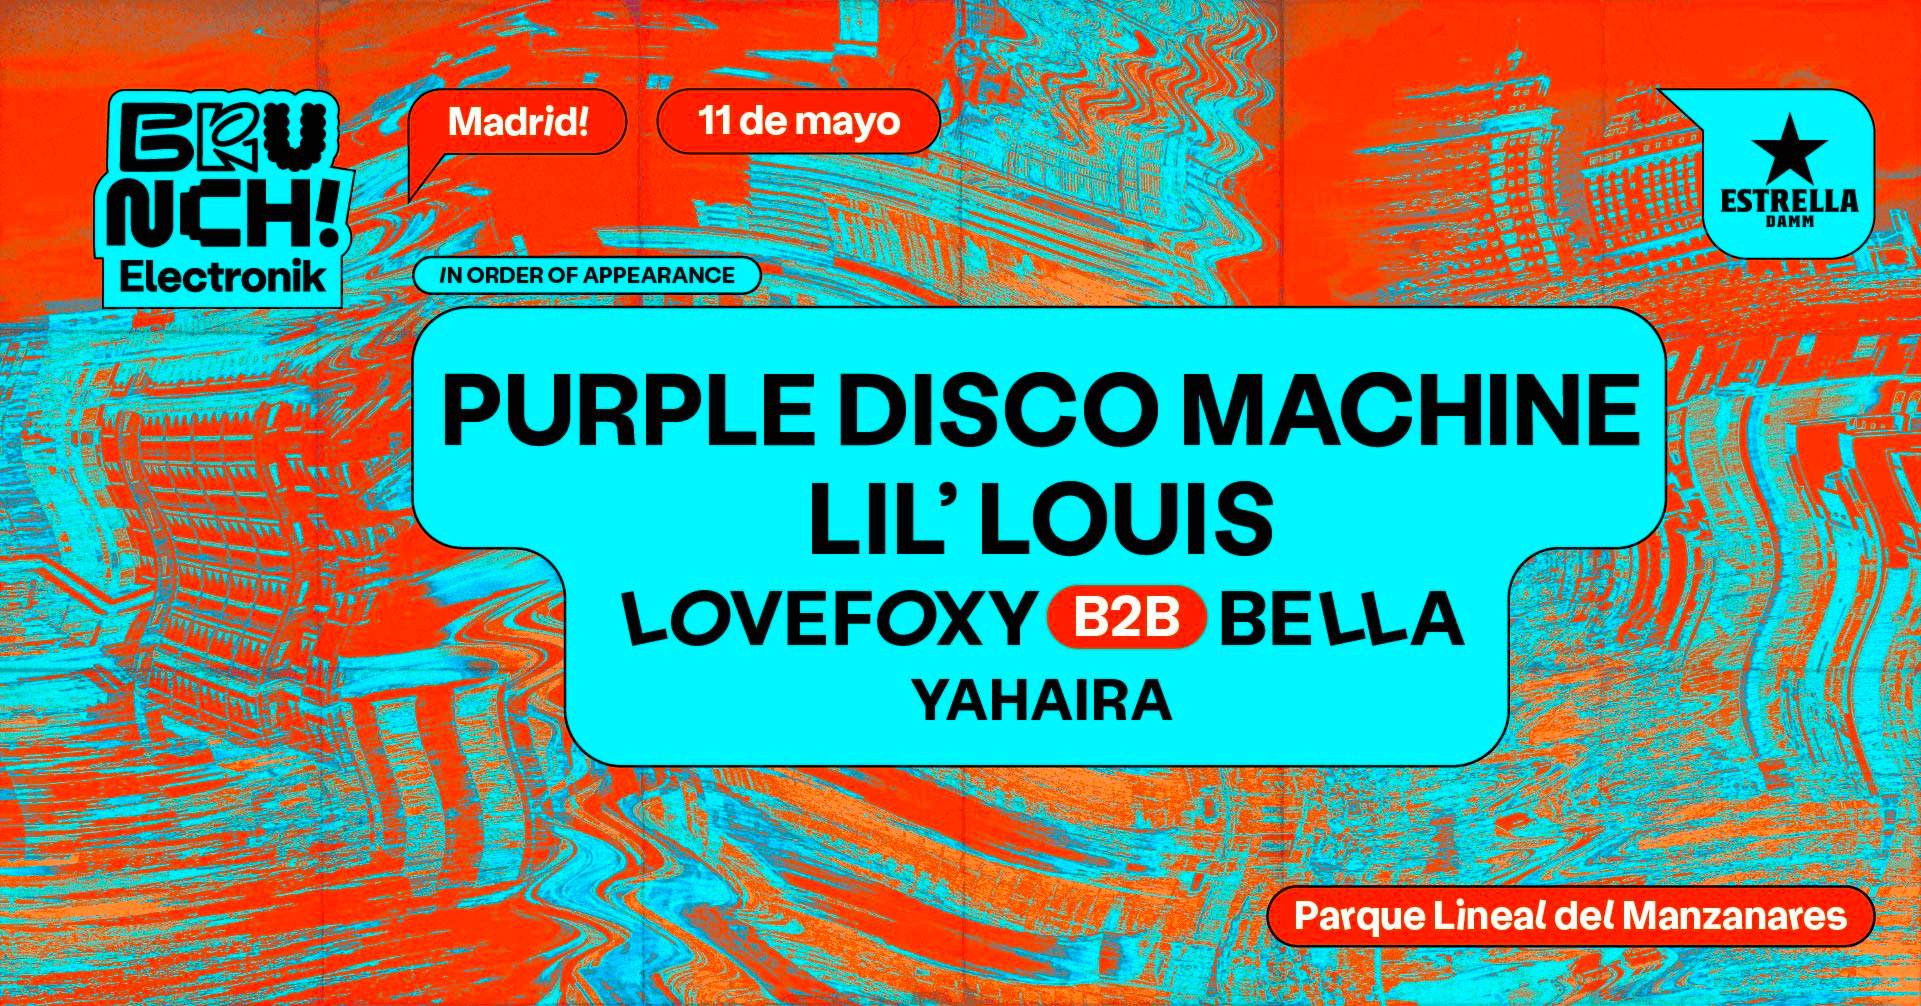 *SOLD OUT* Brunch Electronik Madrid #2: Purple Disco Machine, Lil' Louis y más - Página trasera